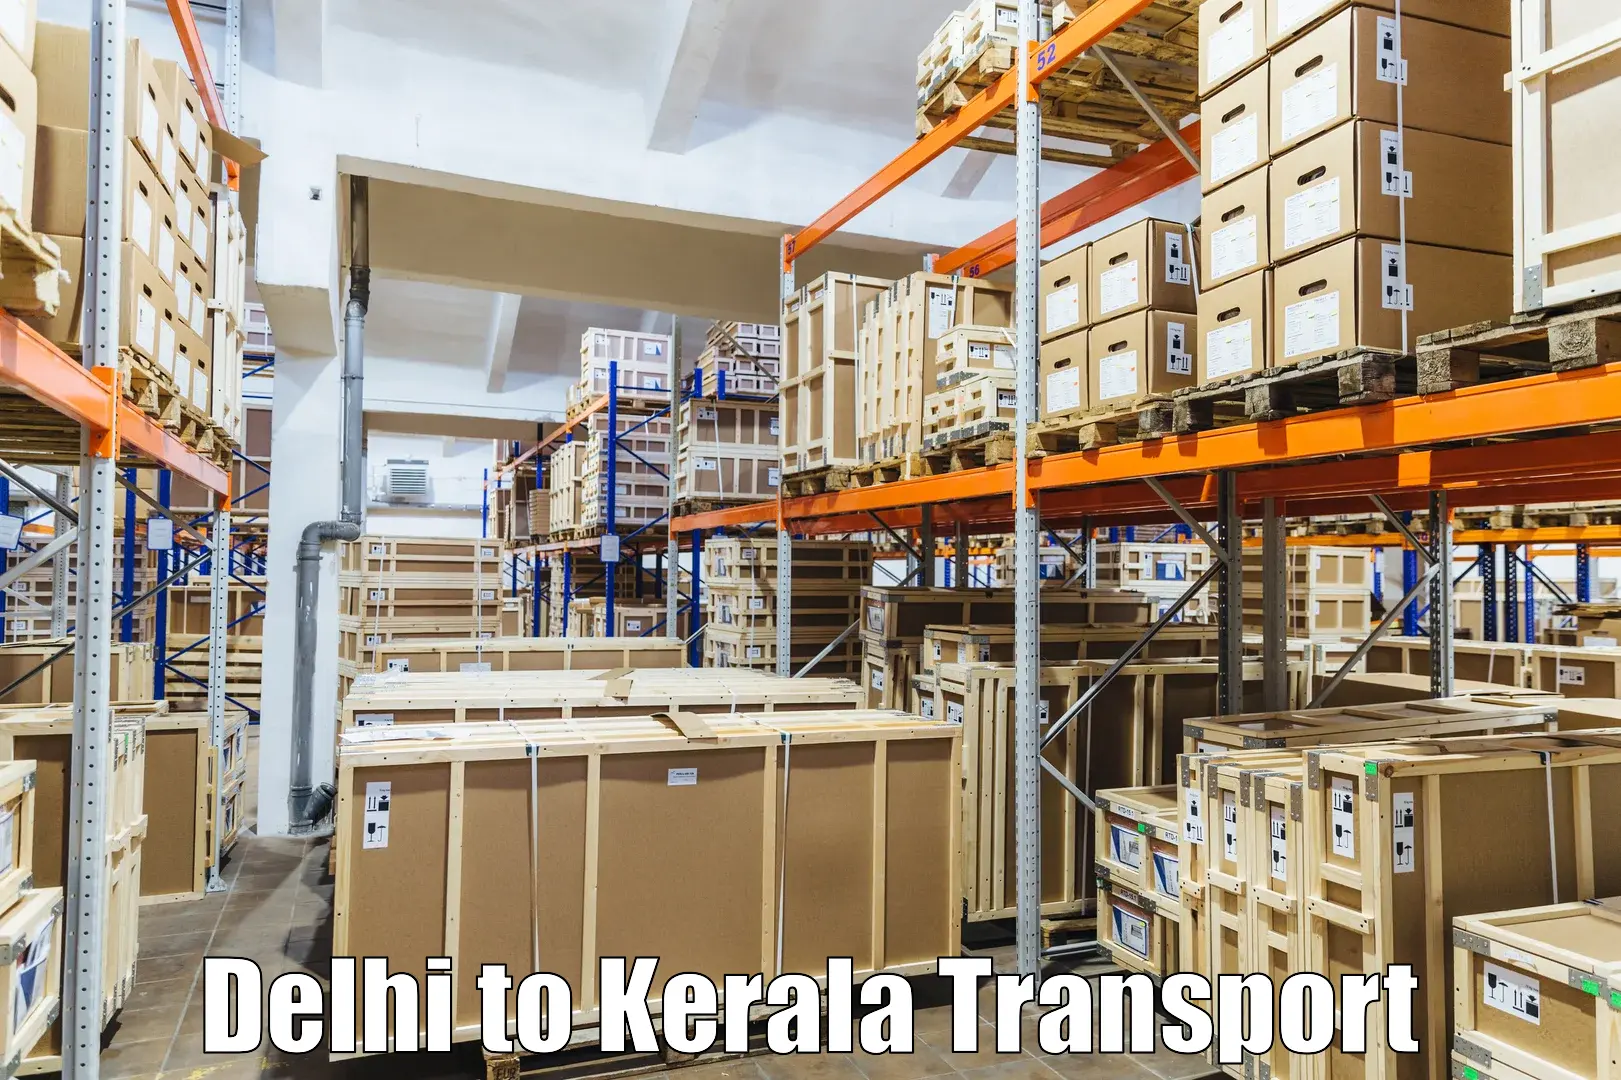 Delivery service Delhi to Kerala